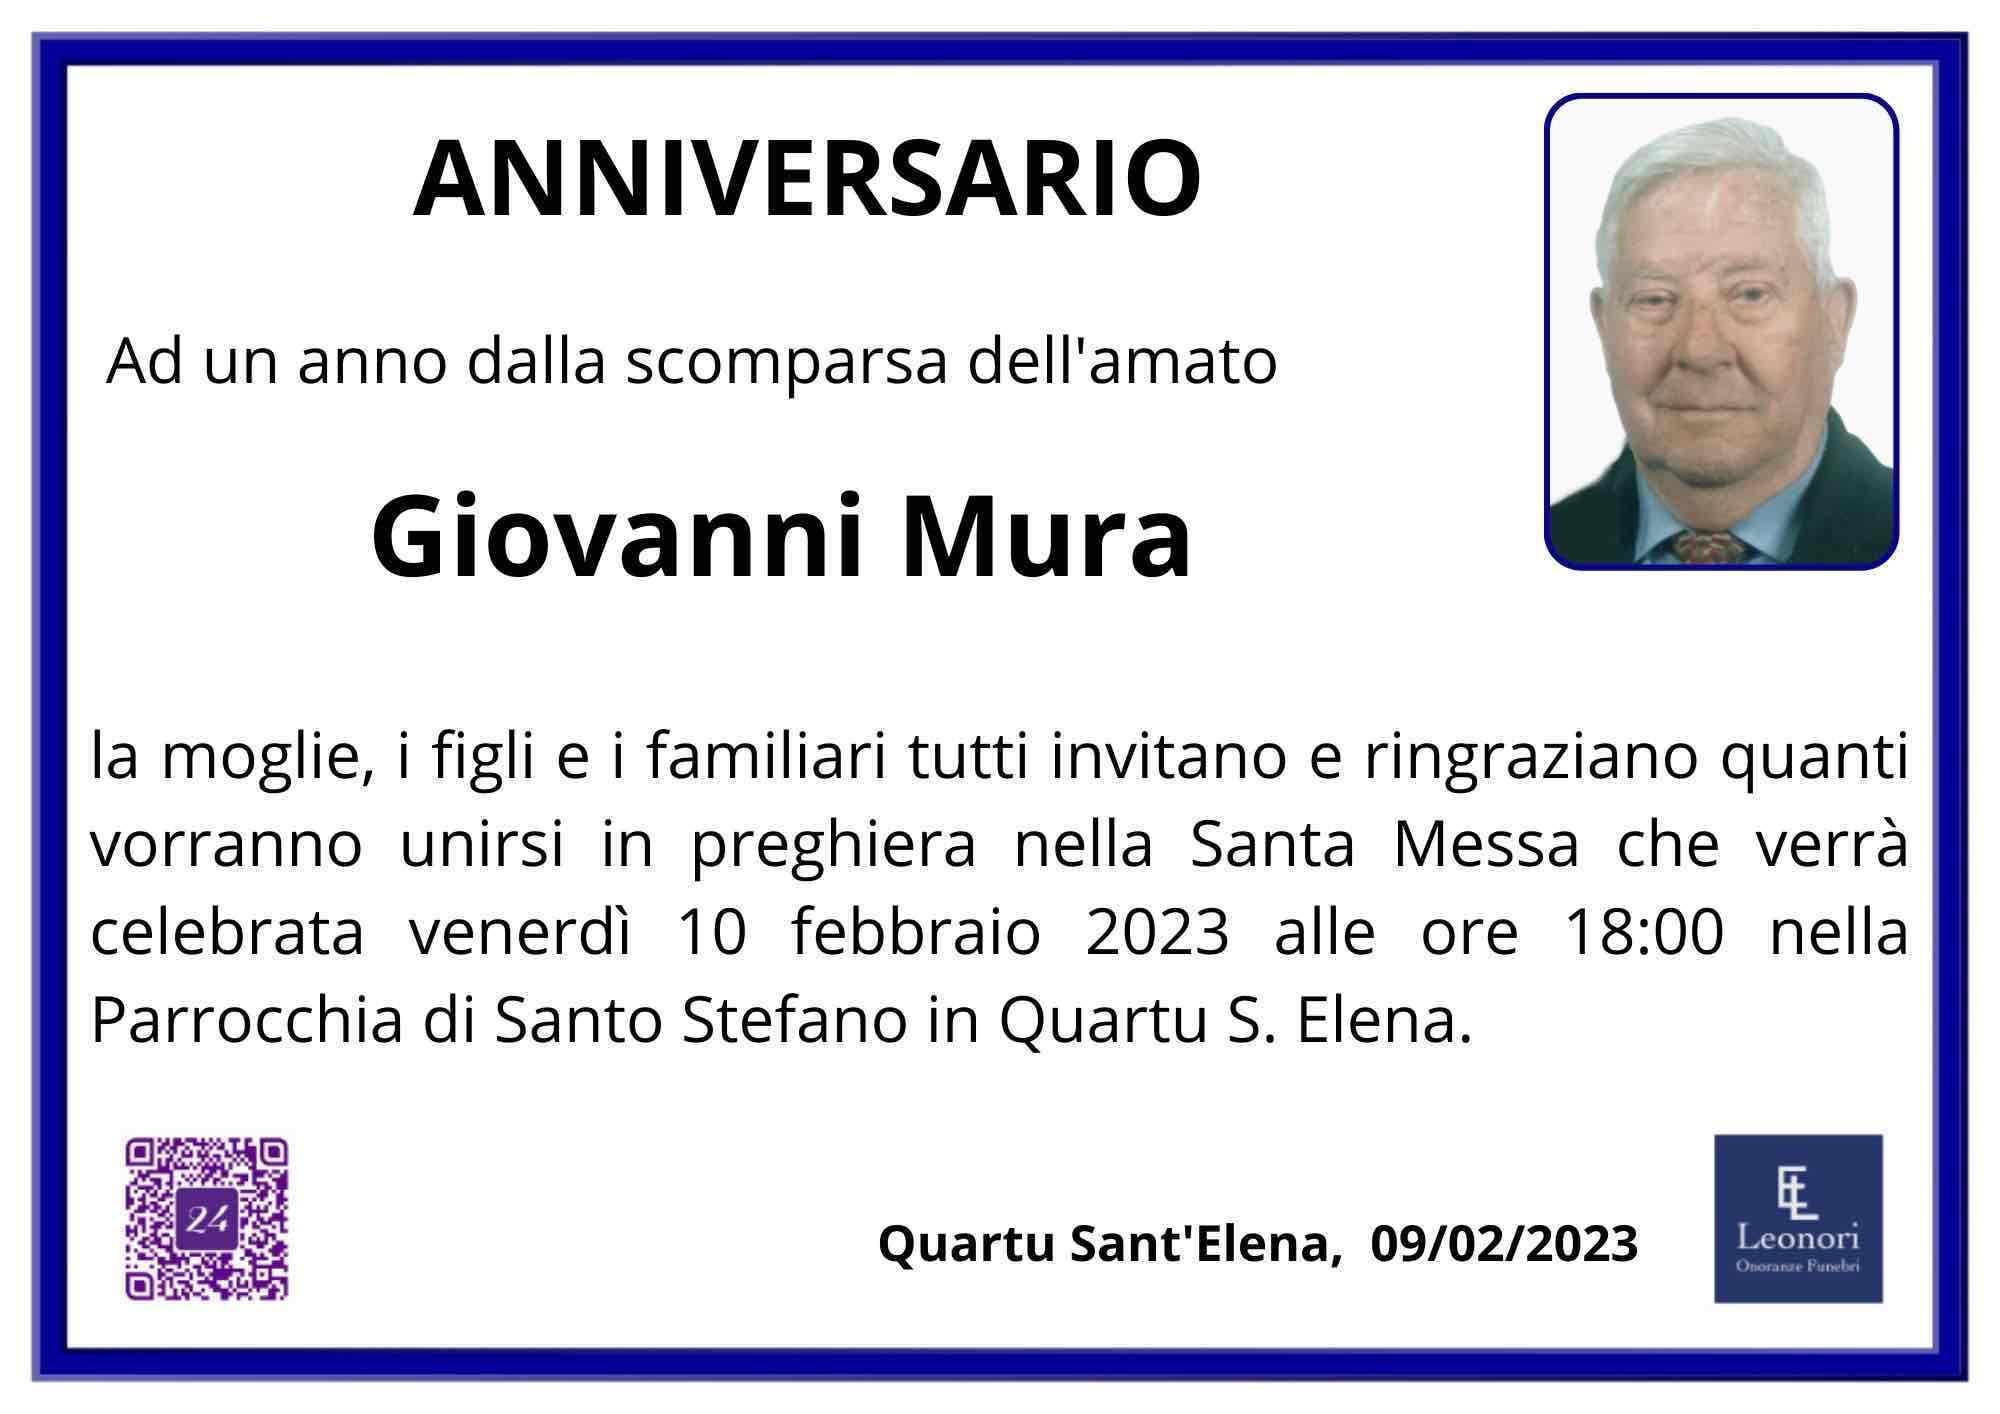 Giovanni Mura